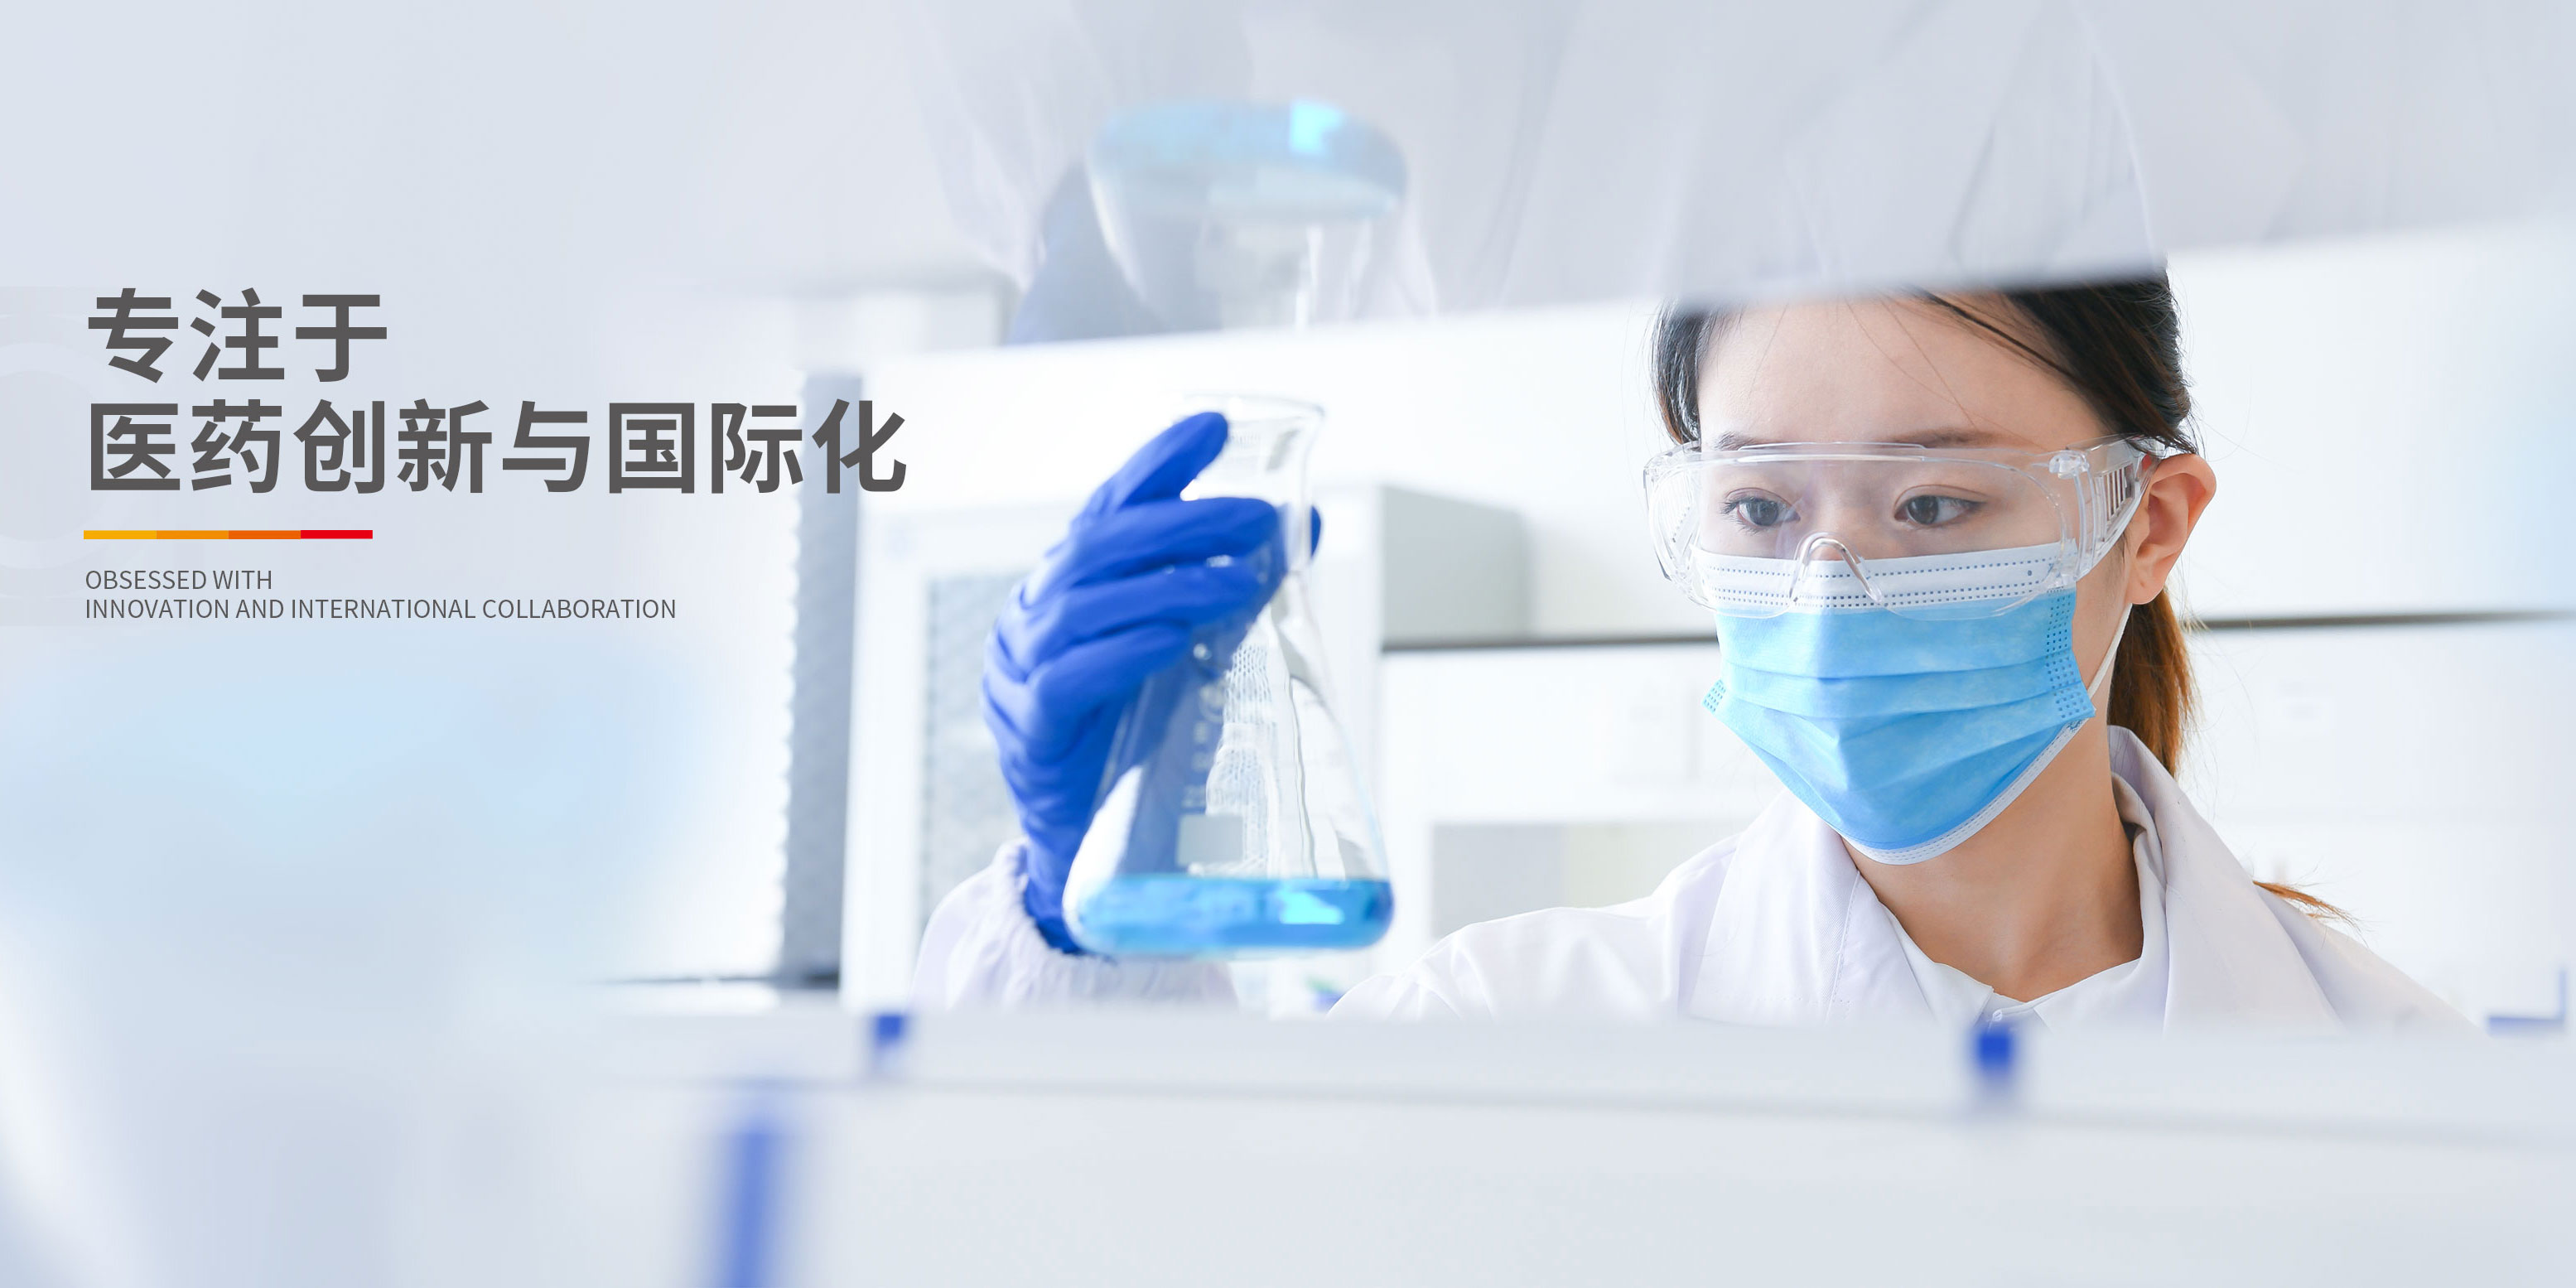 中國抗腫瘤、肝病領域的知名企業